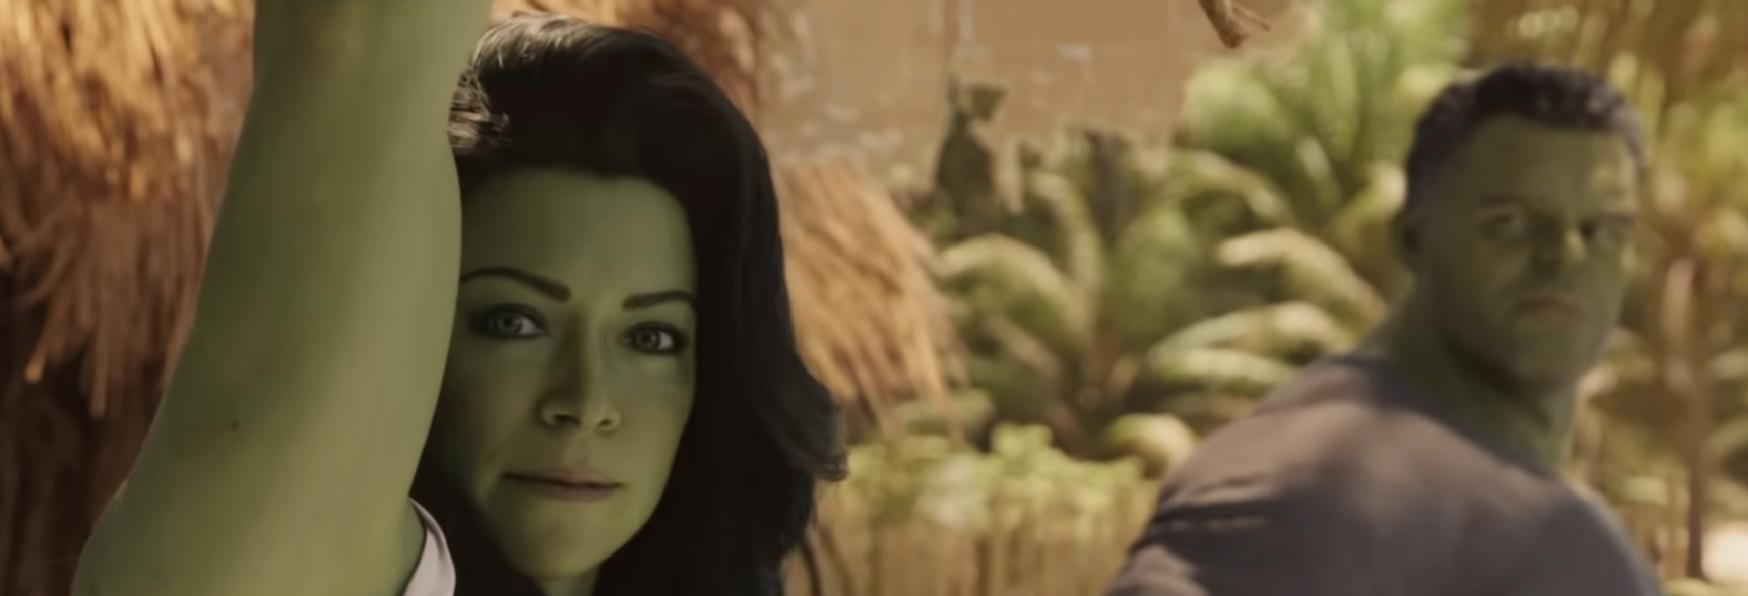 She-Hulk: Attorney at Law - Trama, Cast, Curiosità, Data di Uscita e Trailer della nuova Serie TV Marvel